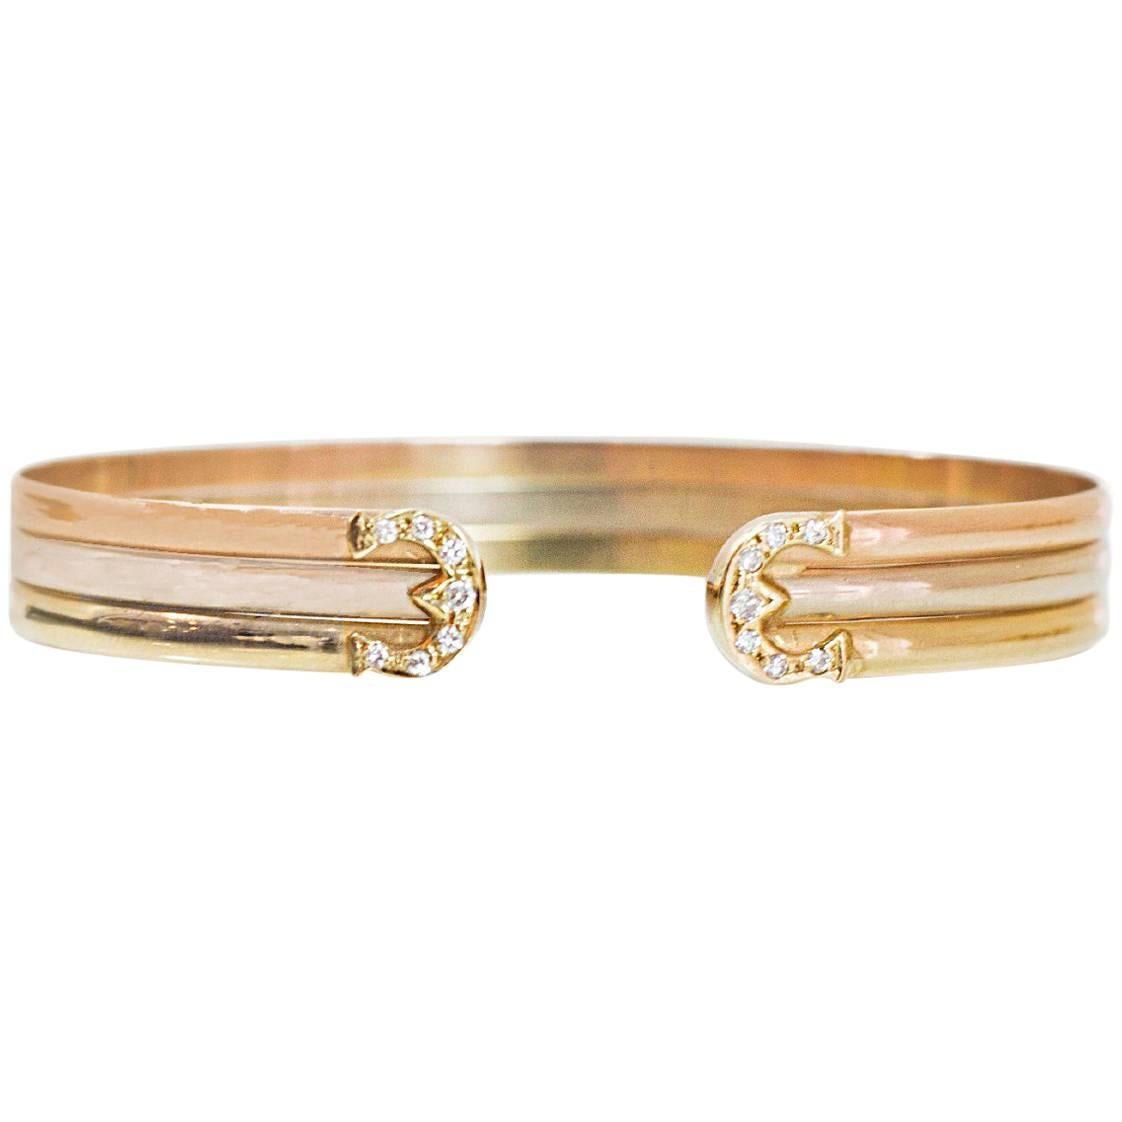 Tri-Colored 18k Gold & Diamond Cuff Bracelet